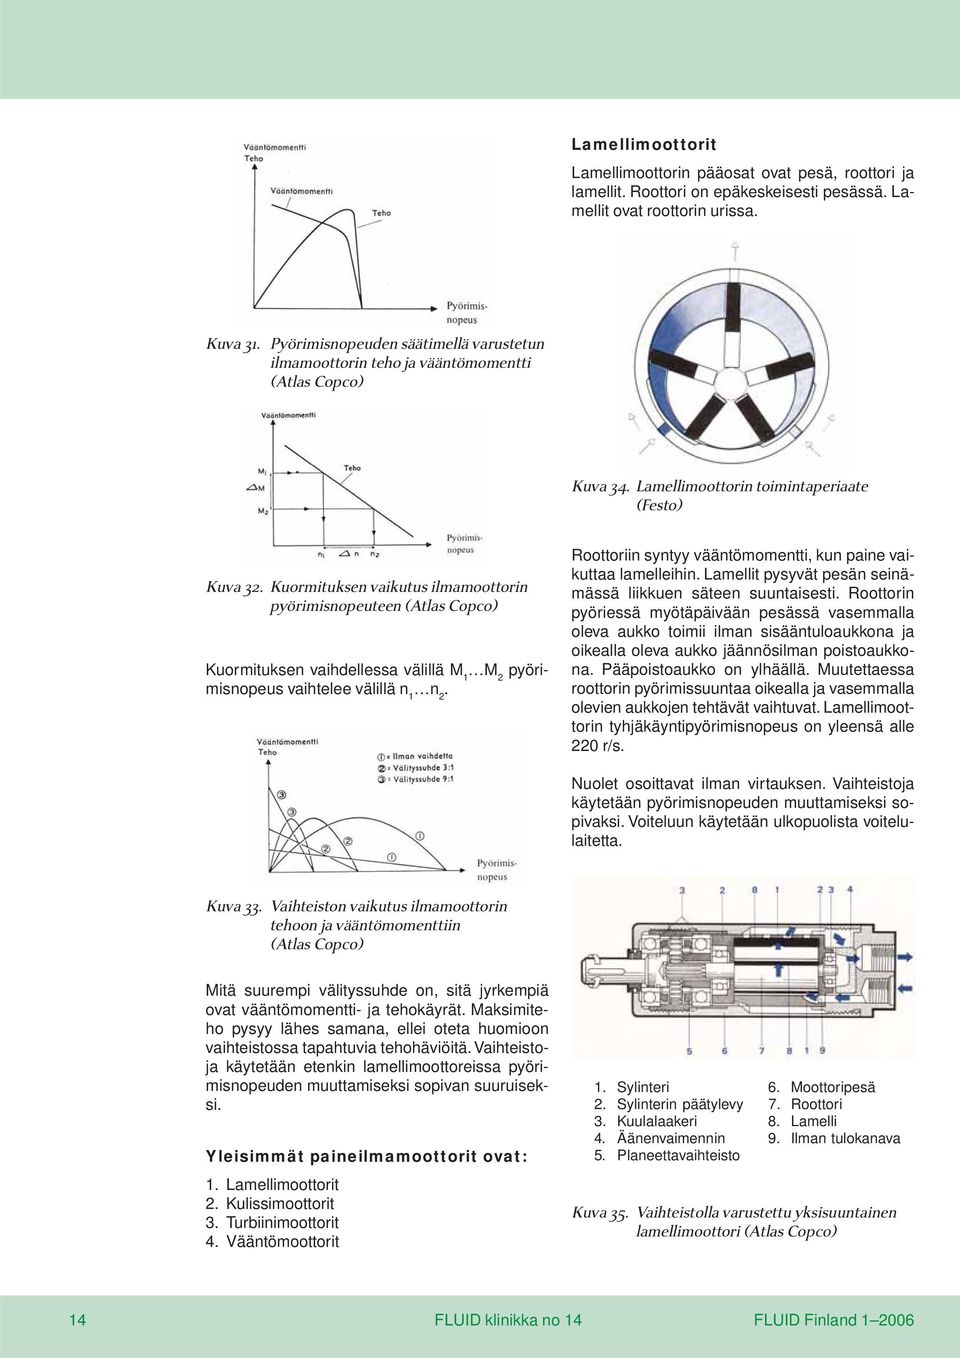 Kuormituksen vaikutus ilmamoottorin pyörimisnopeuteen (Atlas Copco) Kuormituksen vaihdellessa välillä M 1 M 2 pyörimisnopeus vaihtelee välillä n 1 n 2.